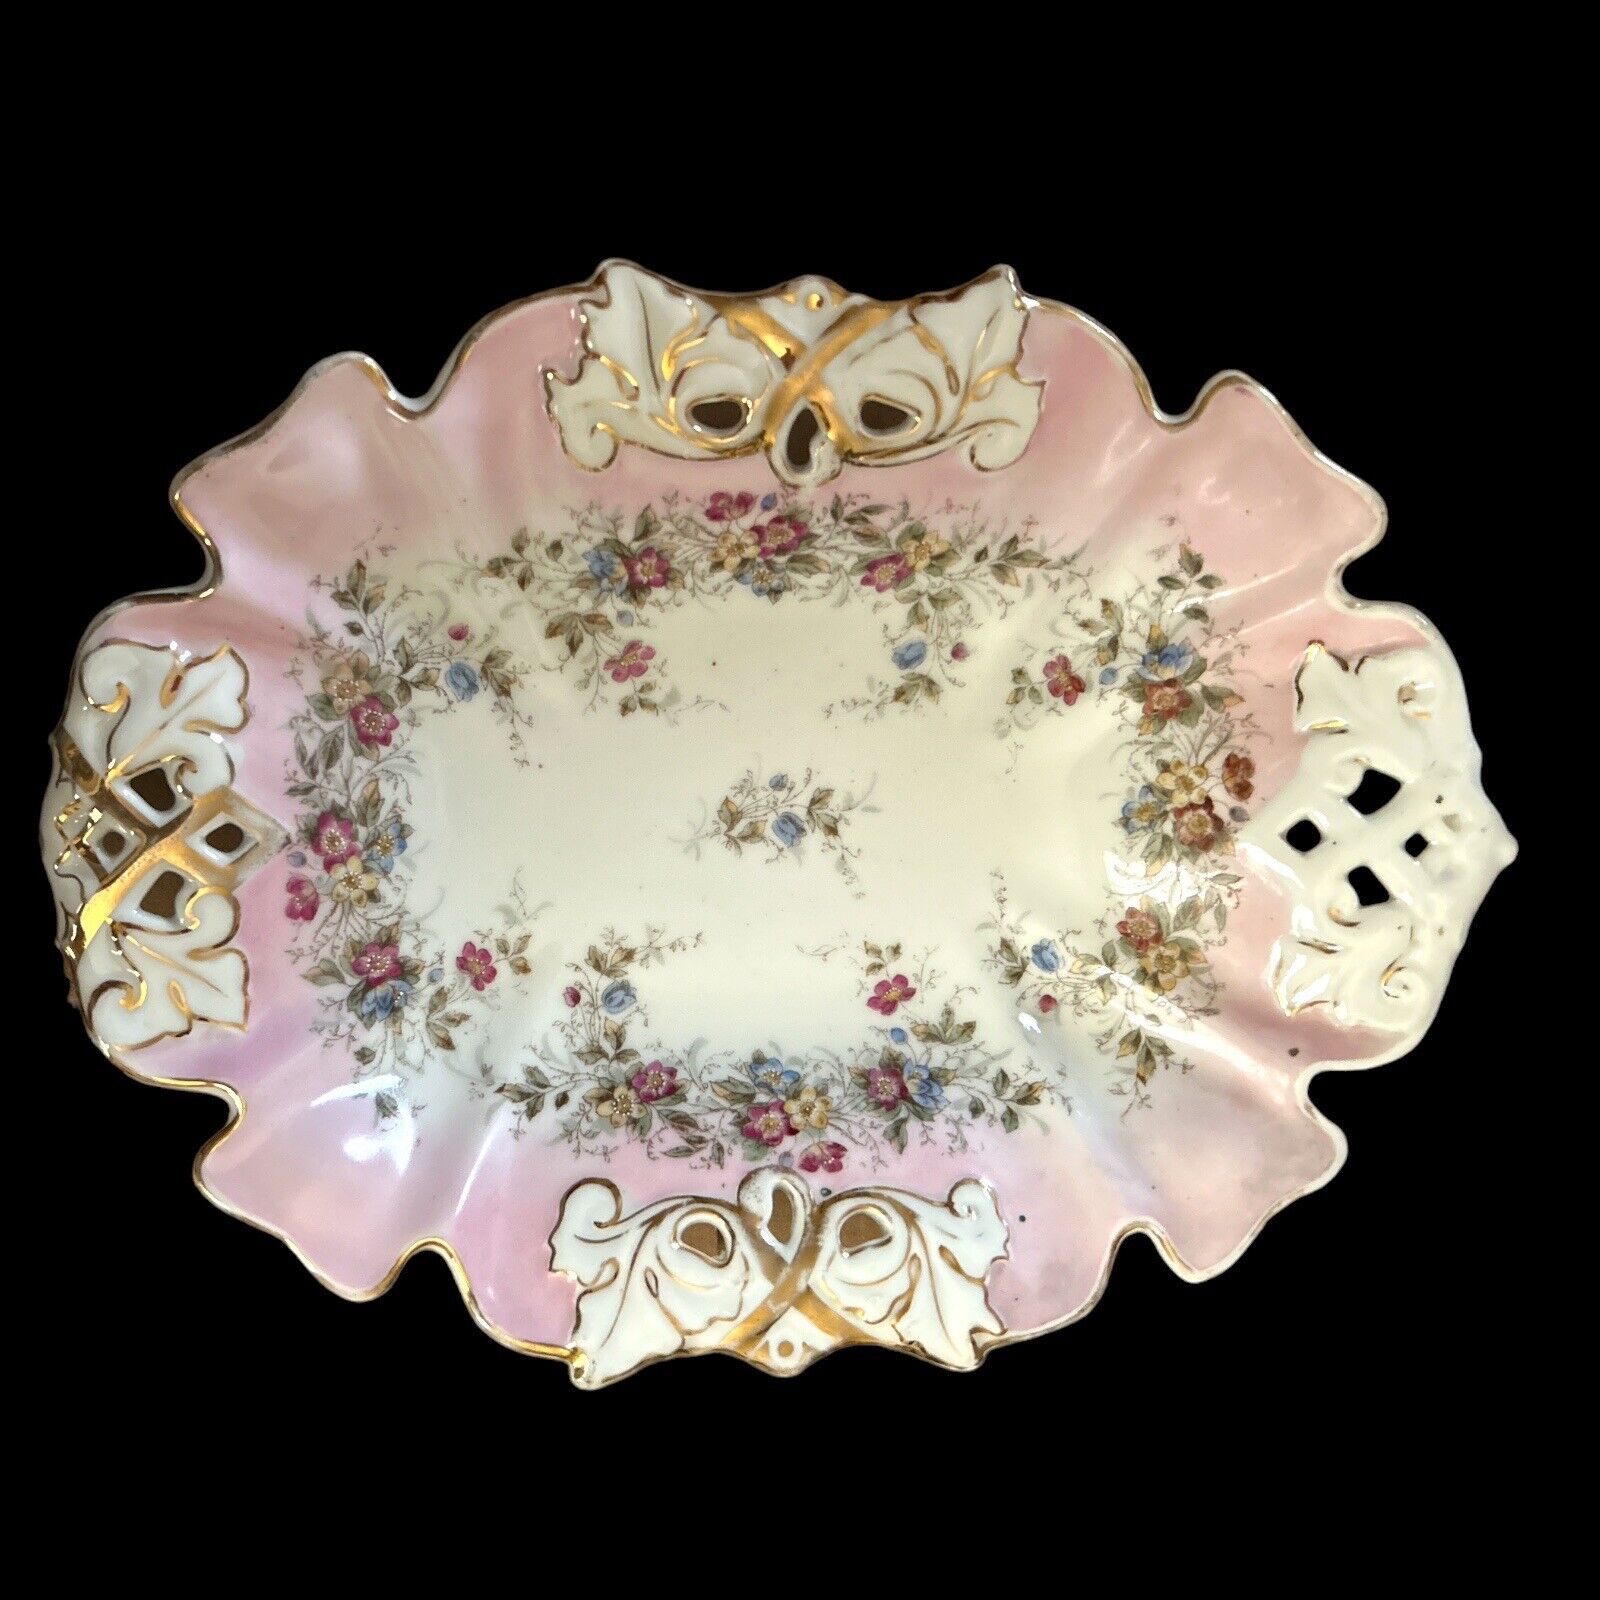 Rare Antique Oscar Schlegelmilch Hand Painted Porcelain Dish 9” X 11.5”